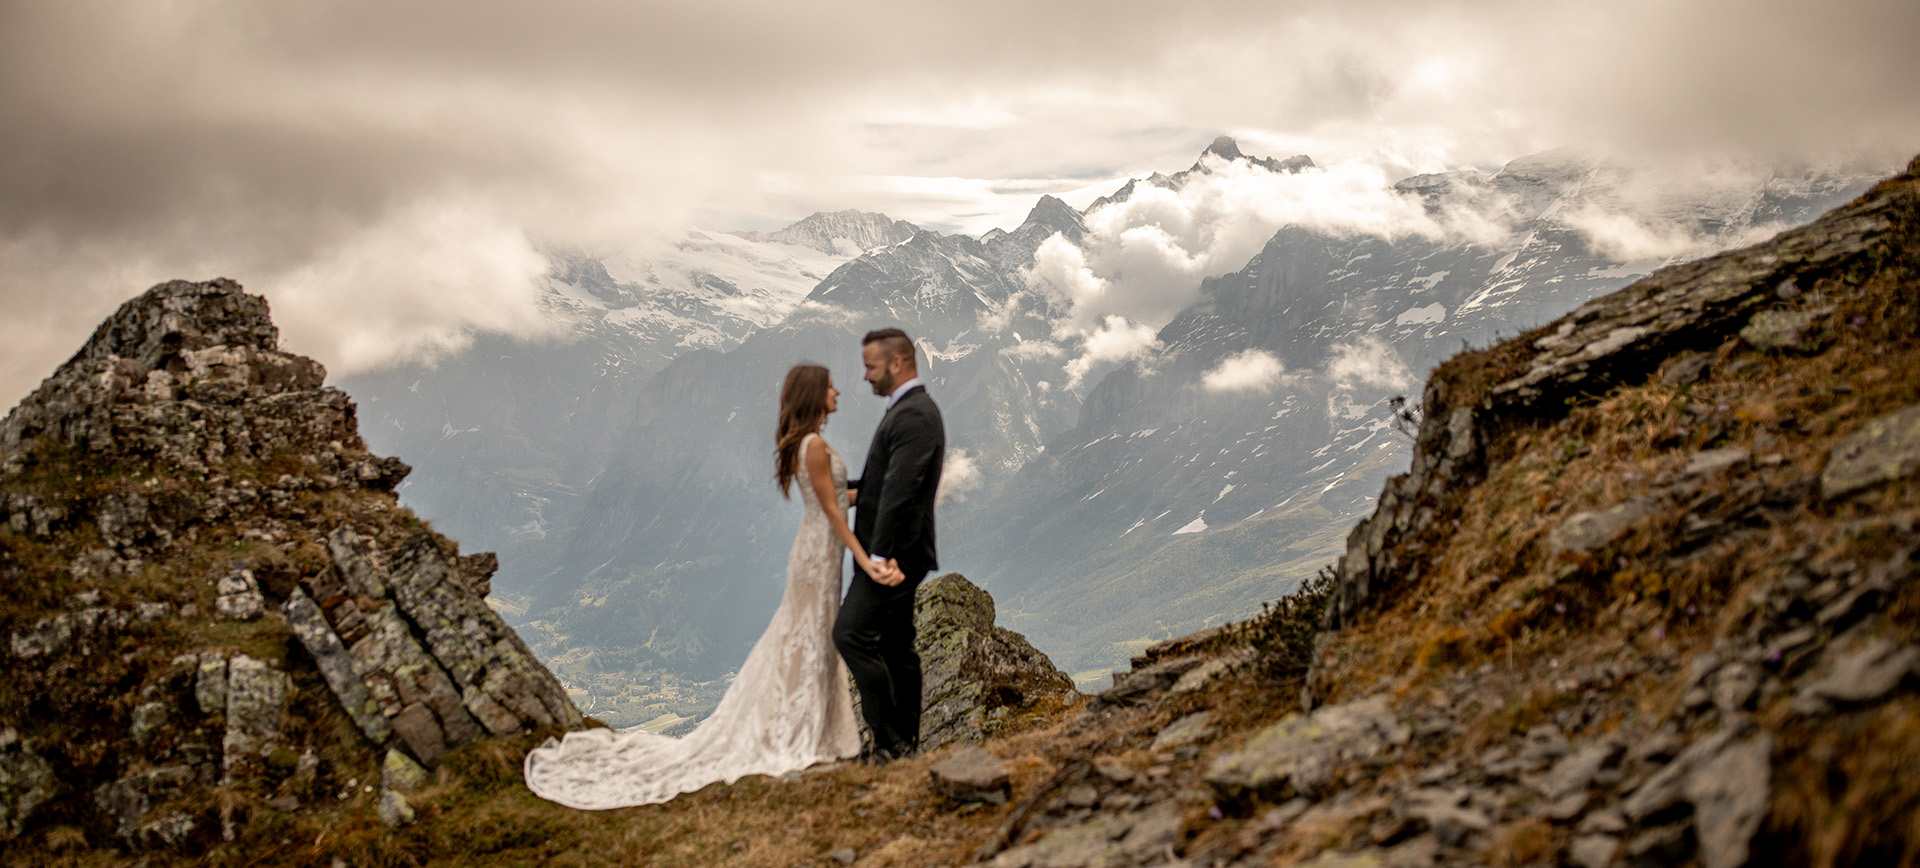 switzerland elopement package - adventure wedidng in the alps